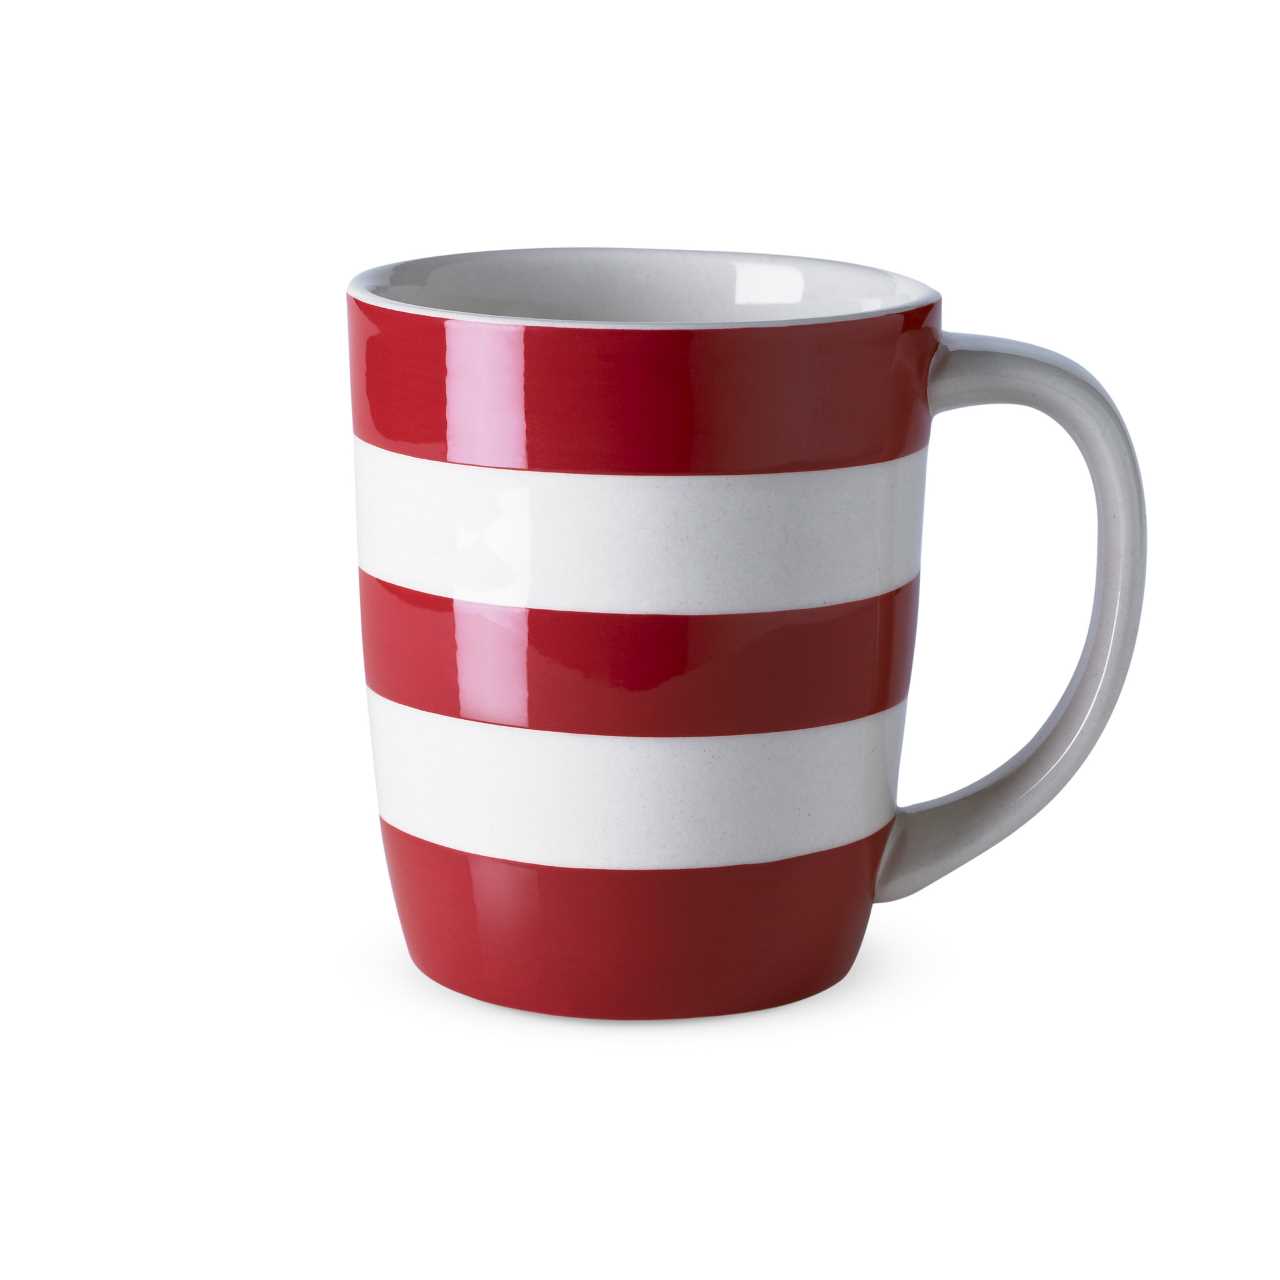 Cornishware Pottery Mug in red stripes